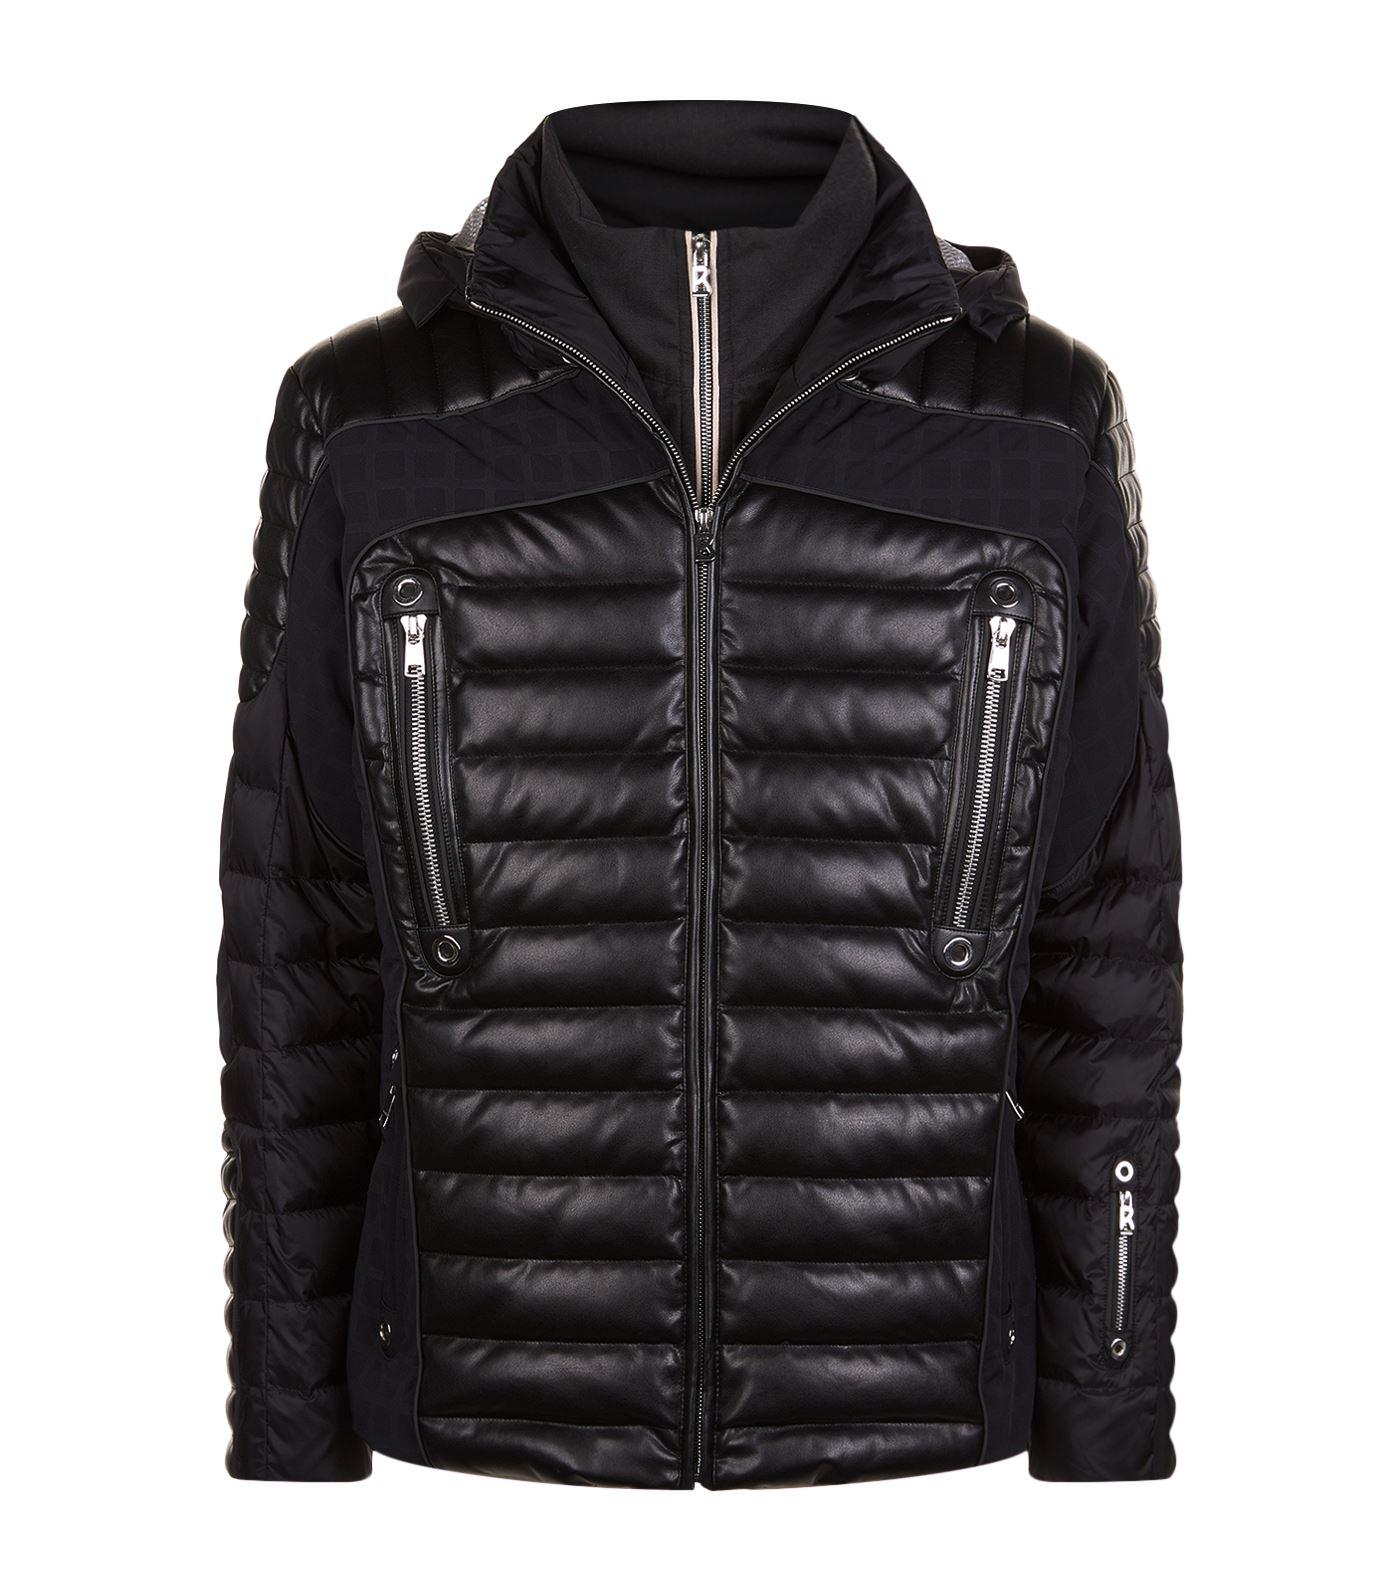 Bogner Leather Panelled Ski Jacket in Black for Men - Lyst